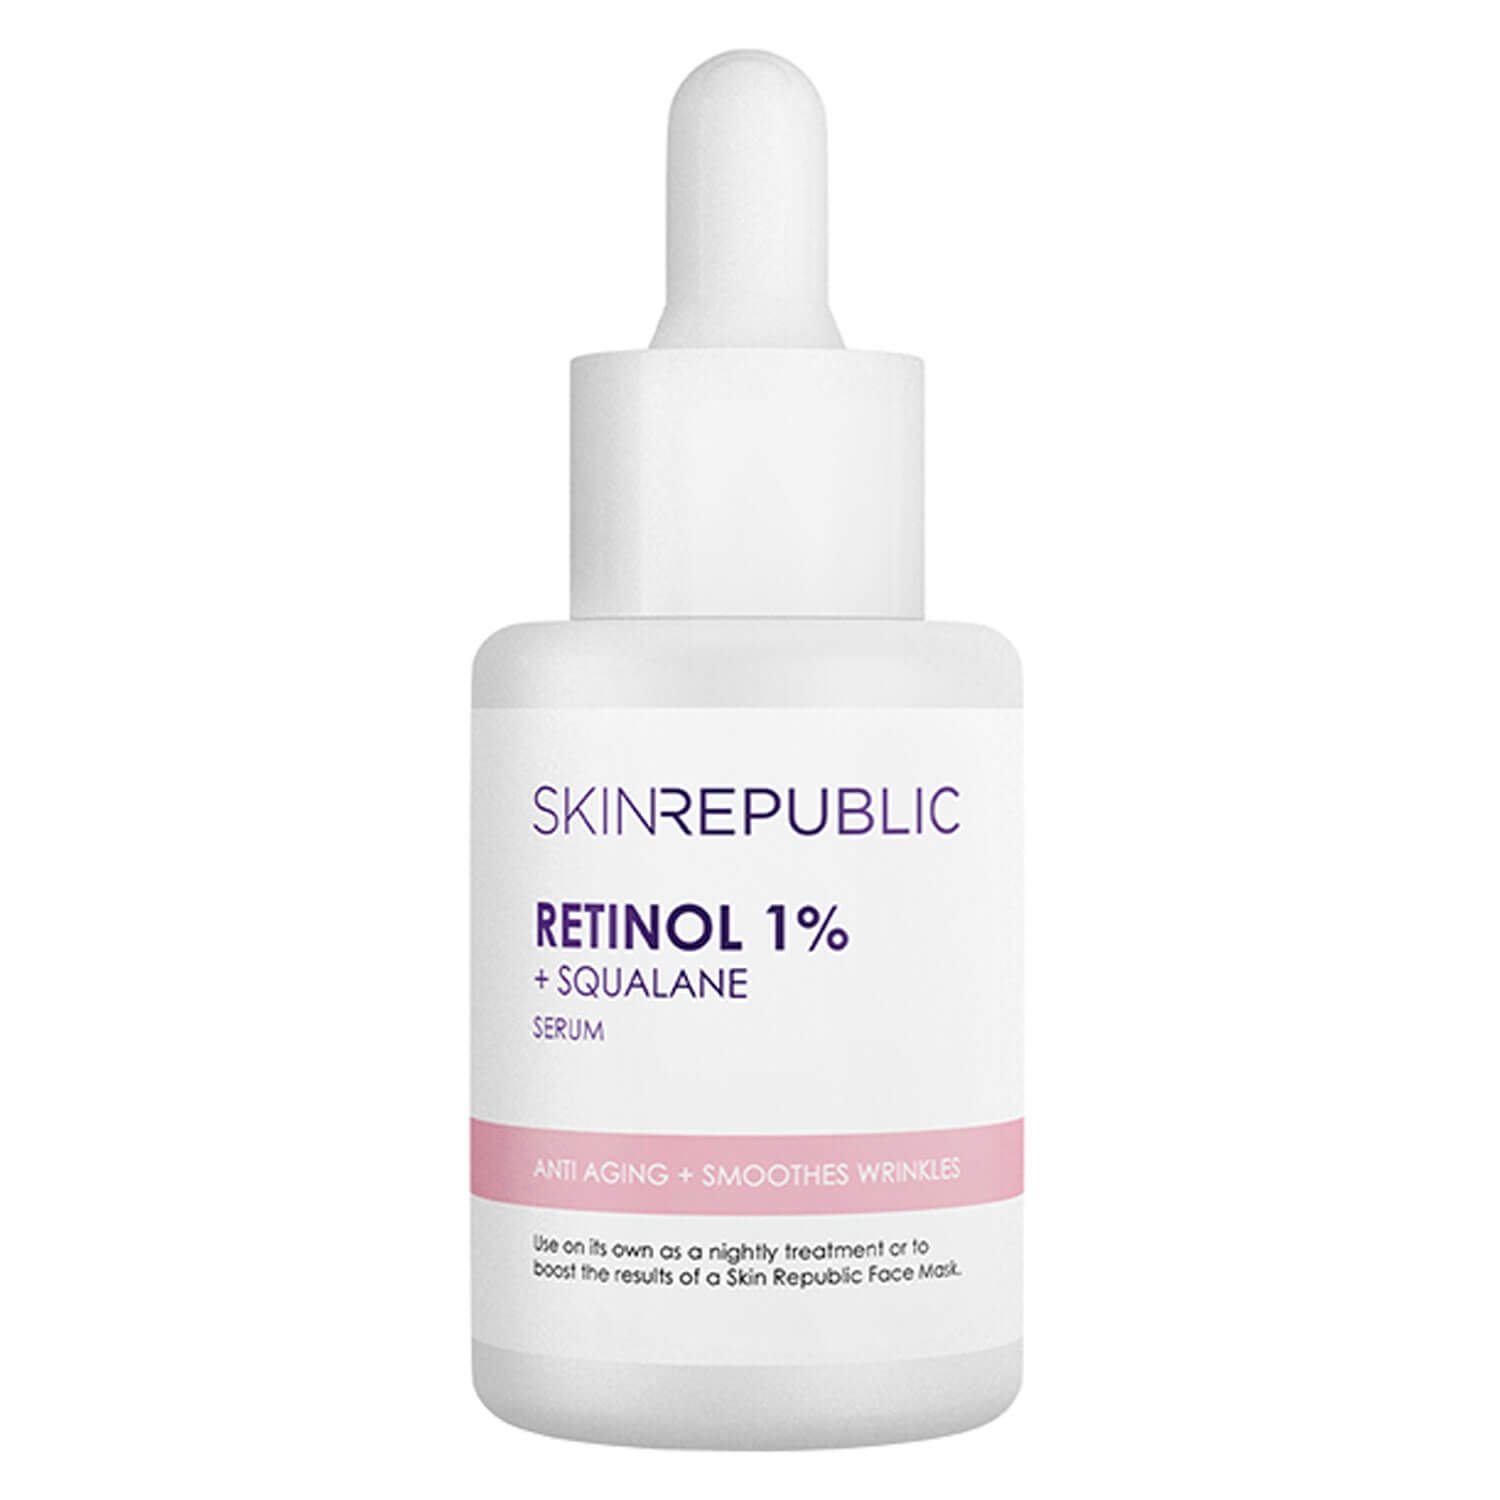 Produktbild von Skin Republic - Retinol 1% + Squalane Serum